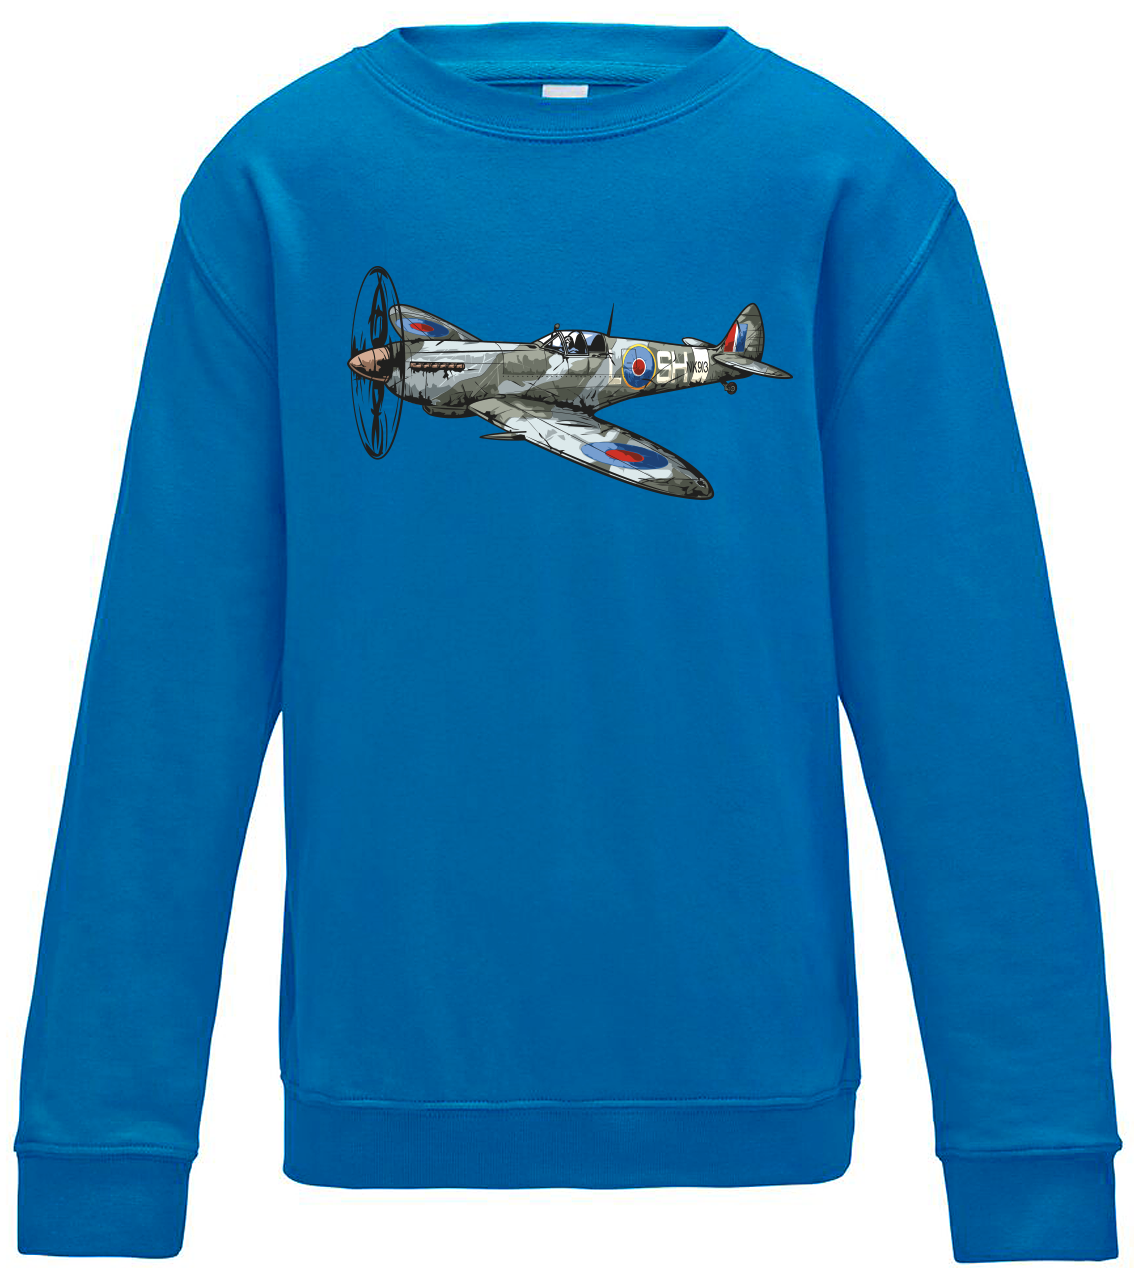 Dětská mikina s letadlem - Spitfire Velikost: 12/14 (152/164), Barva: Modrá